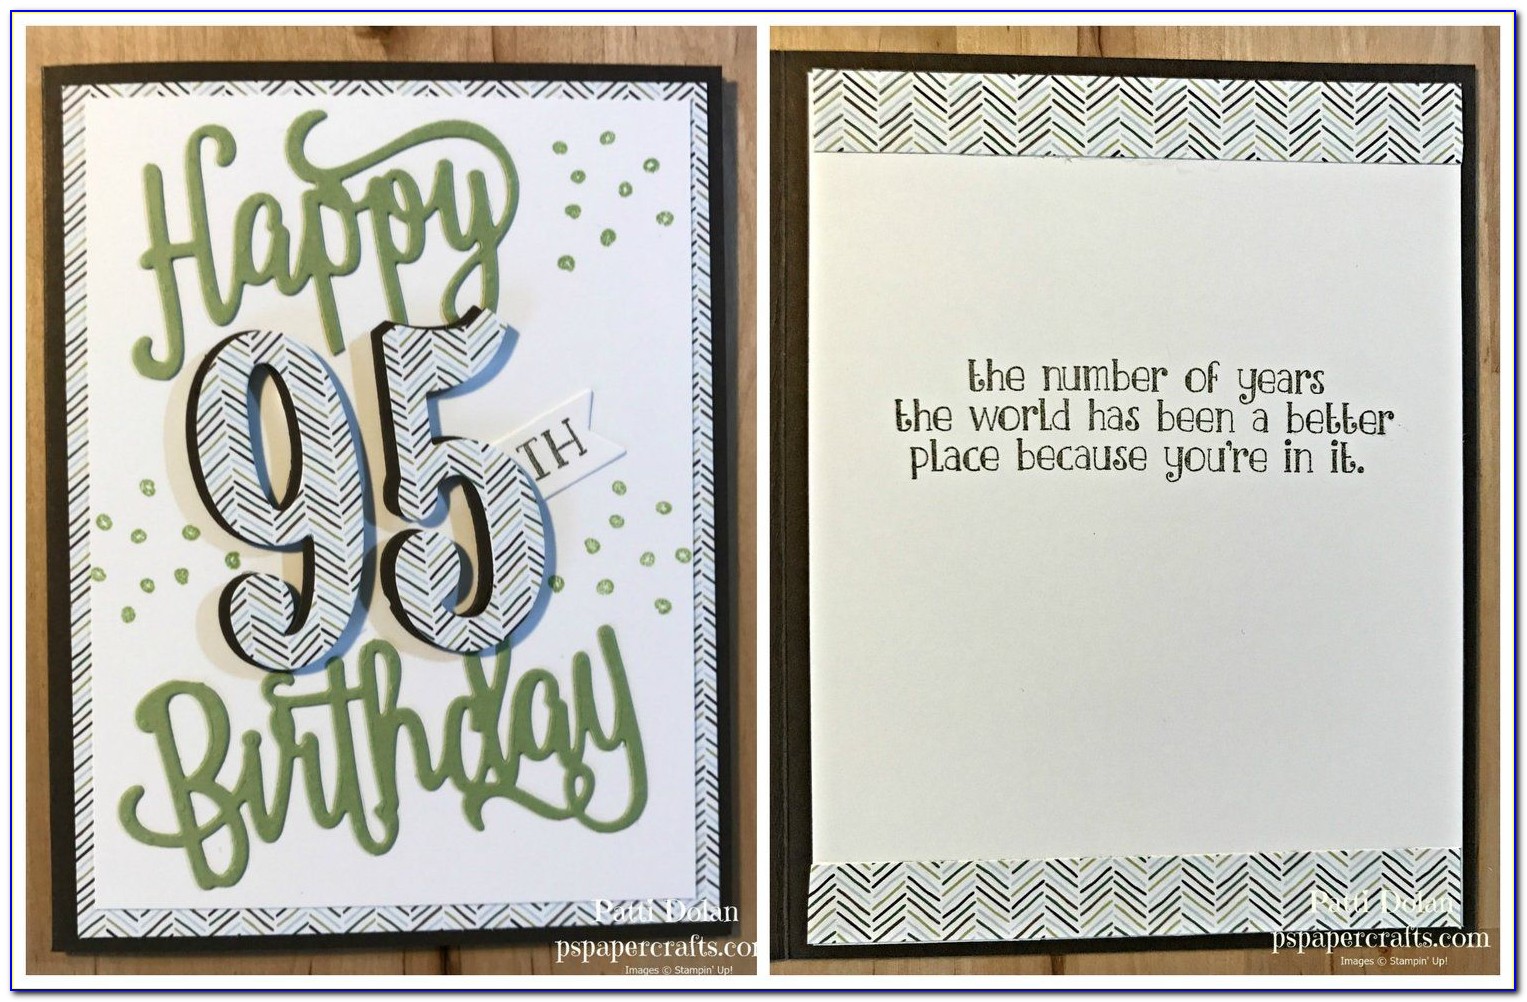 95th Birthday Card Ideas